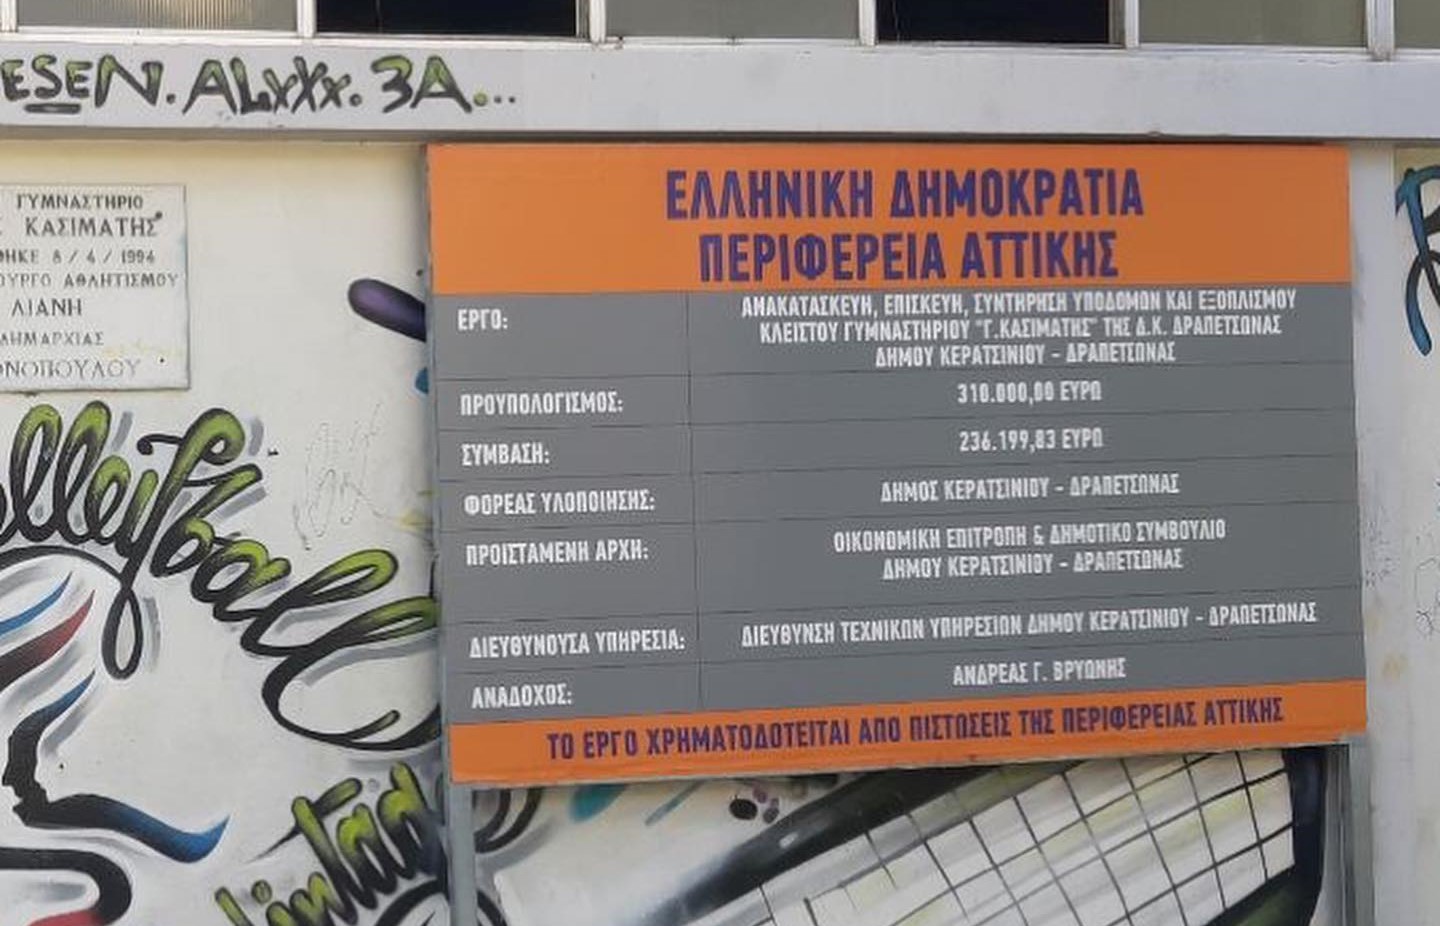 Με χρηματοδότηση της Περιφέρειας Αττικής η ανακατασκευή του Κλειστού Γυμναστηρίου ‘Γ.Κασιμάτης’ στον Δήμο Κερατσινίου-Δραπετσώνας ©Περιφέρεια Αττικής